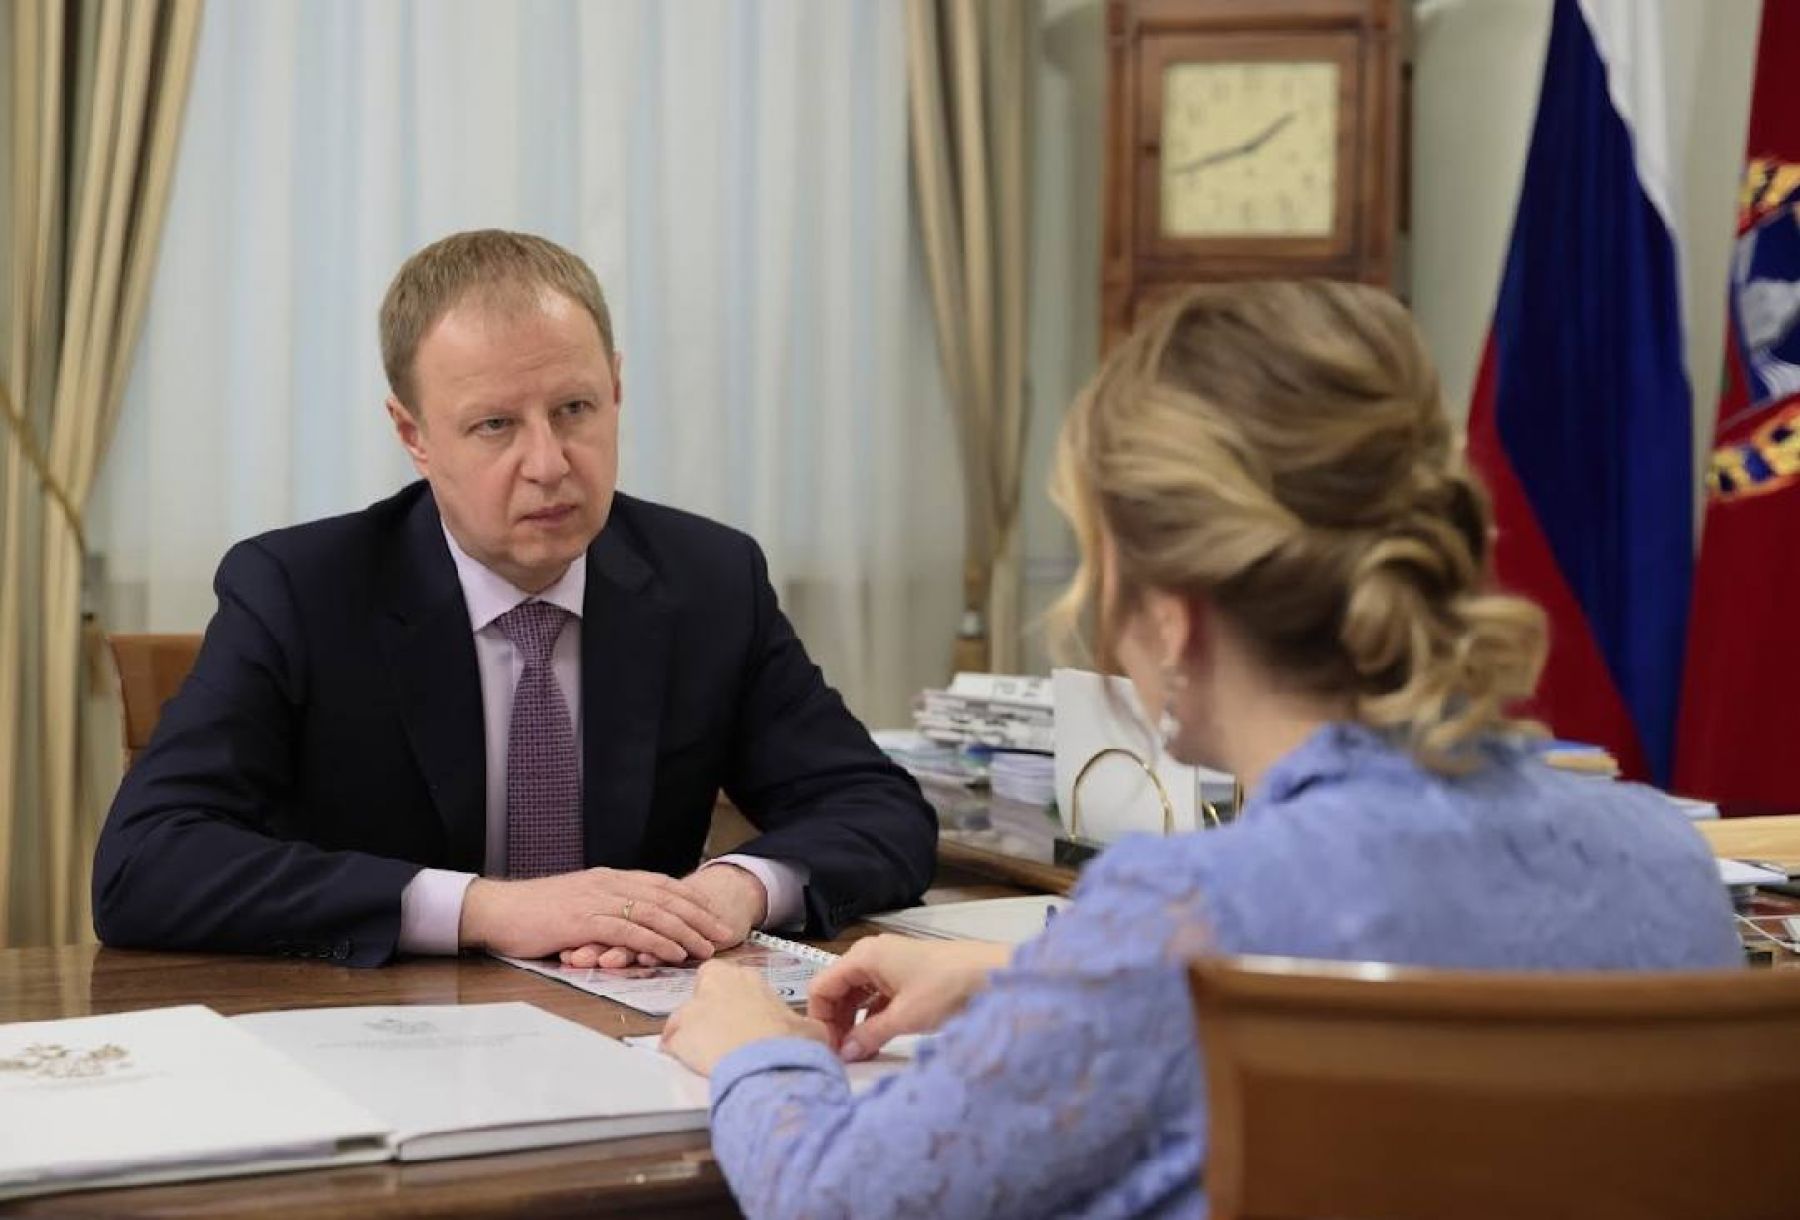 Виктор Томенко провел встречу с уполномоченным по правам ребенка Марией Львовой-Беловой.